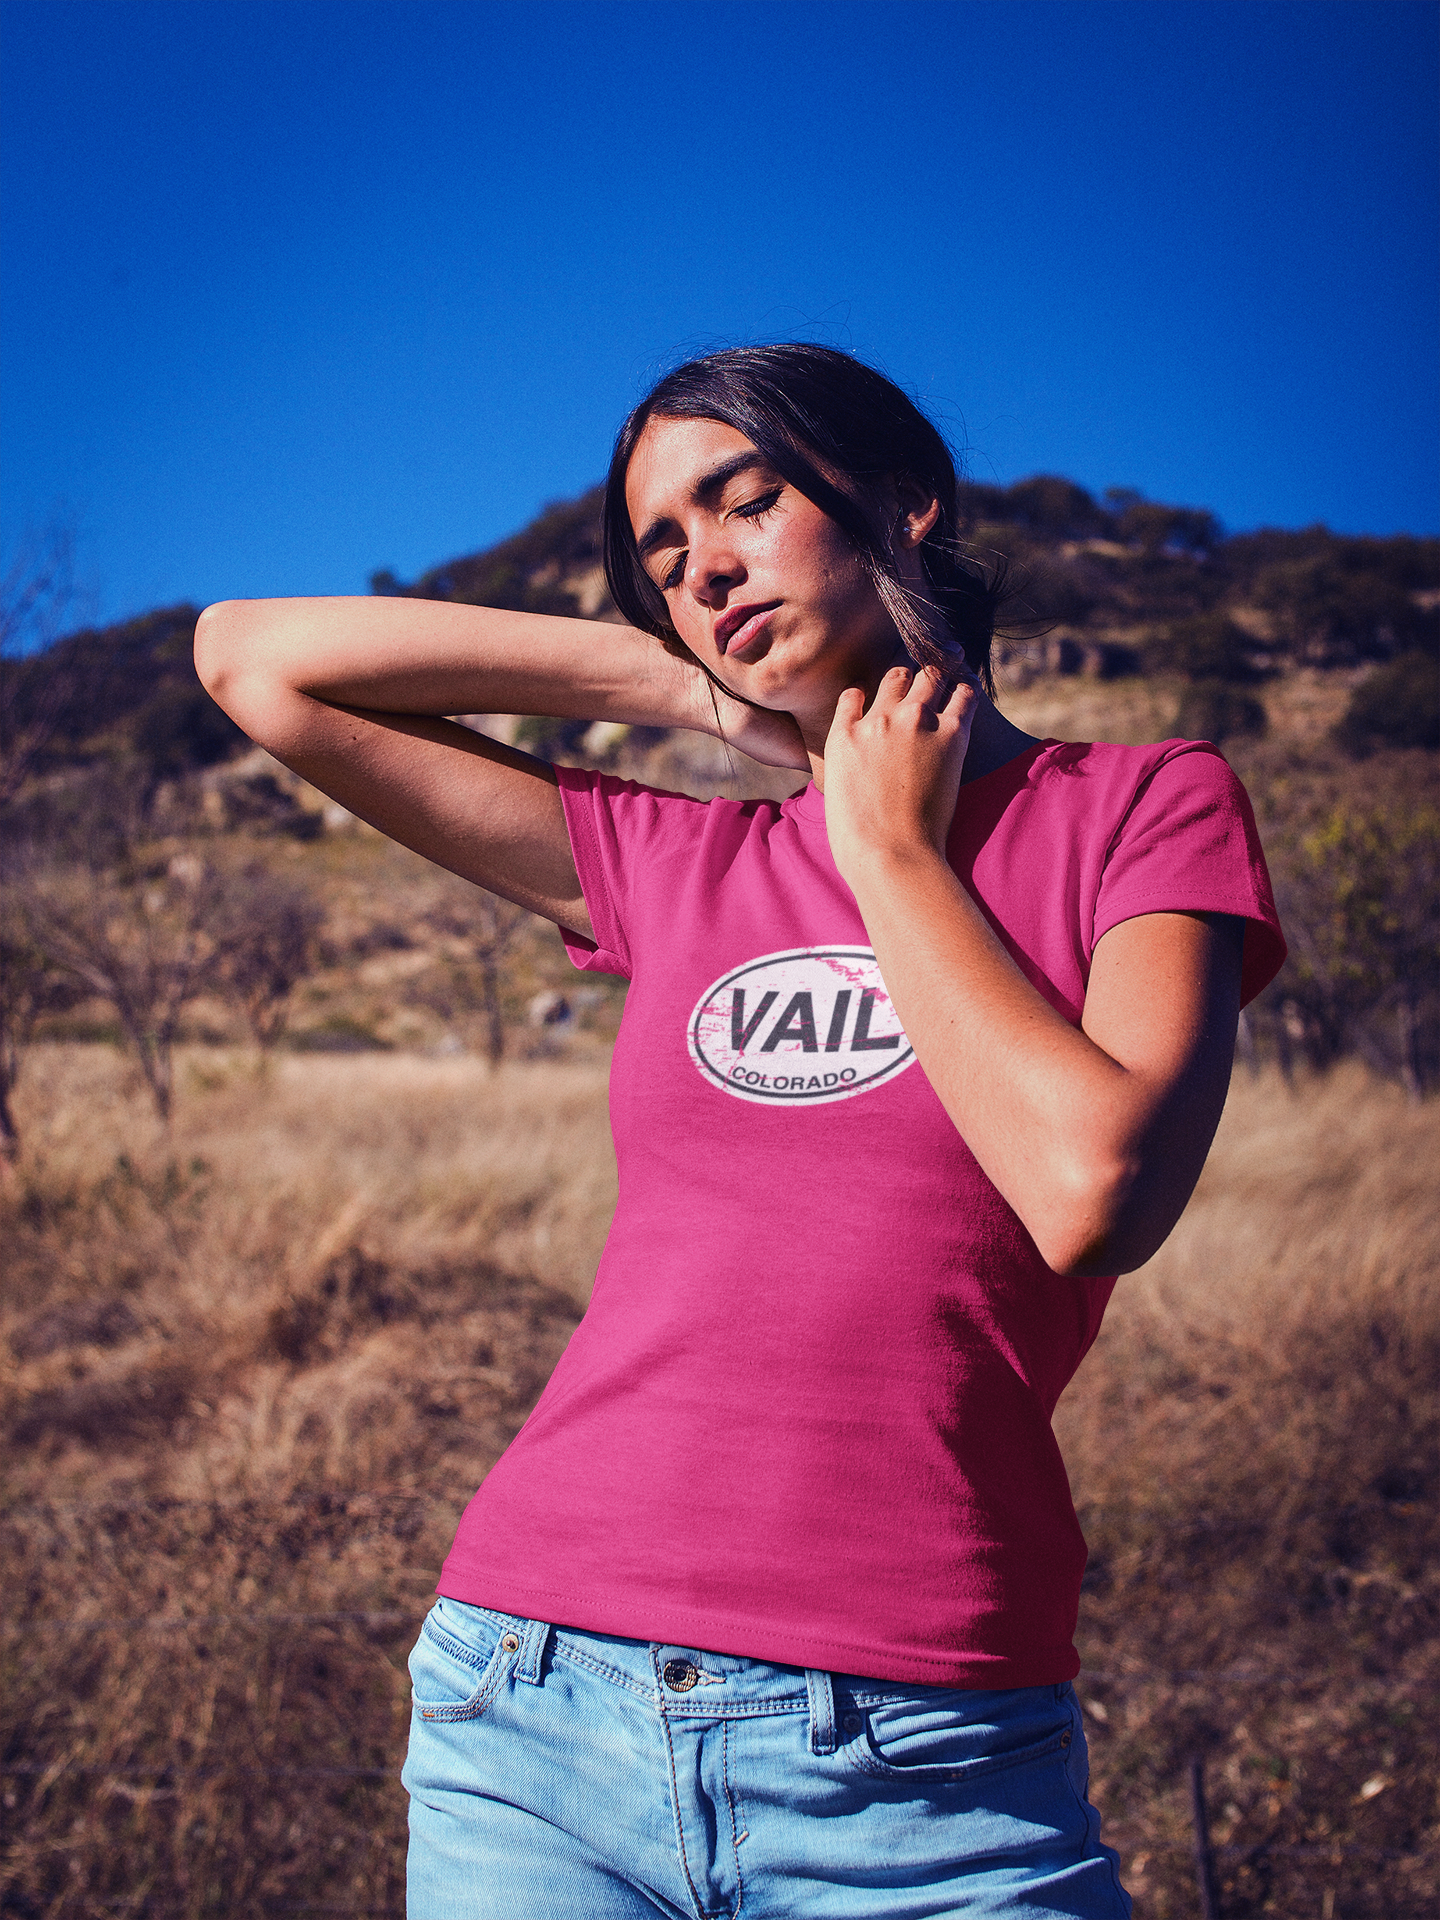 Vail, CO Women's Classic T-Shirt Souvenirs - My Destination Location